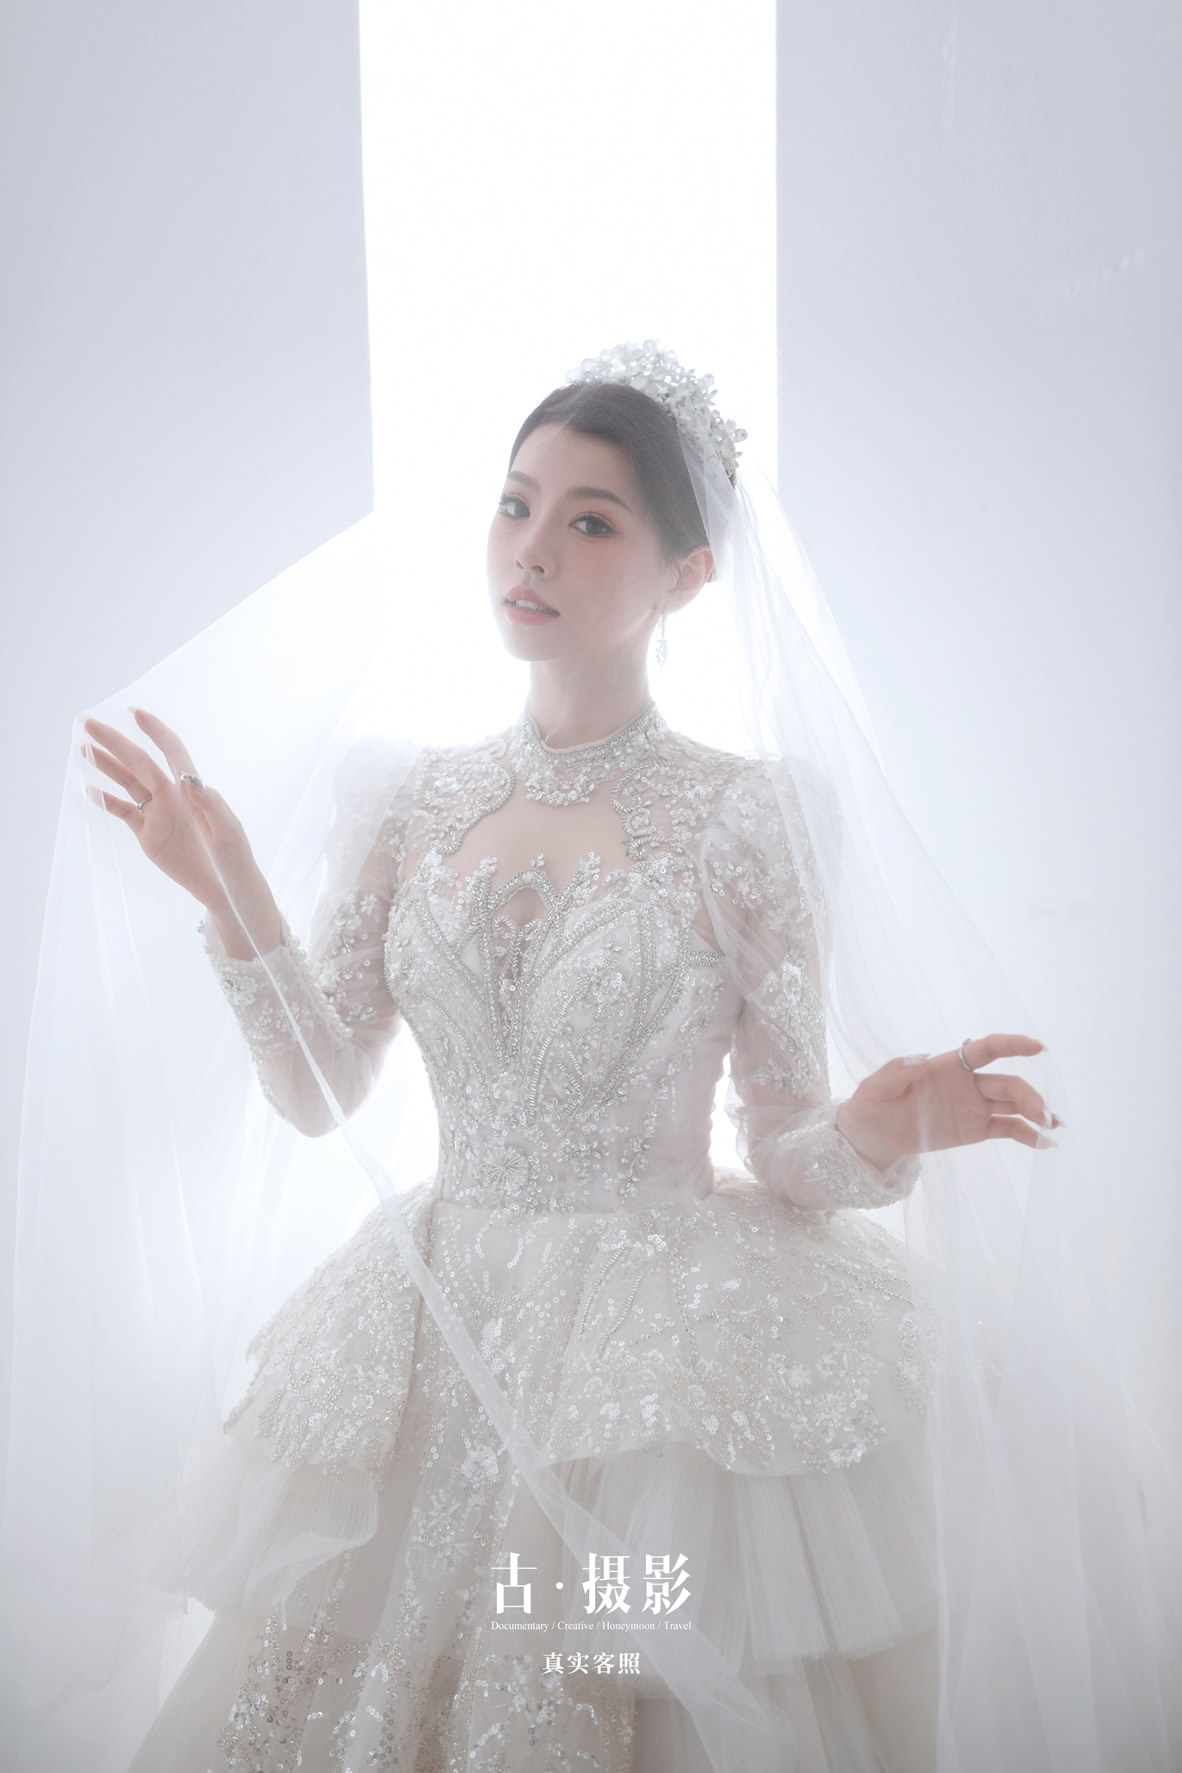 陈先生 刘小姐  - 每日客照 - 广州婚纱摄影-广州古摄影官网